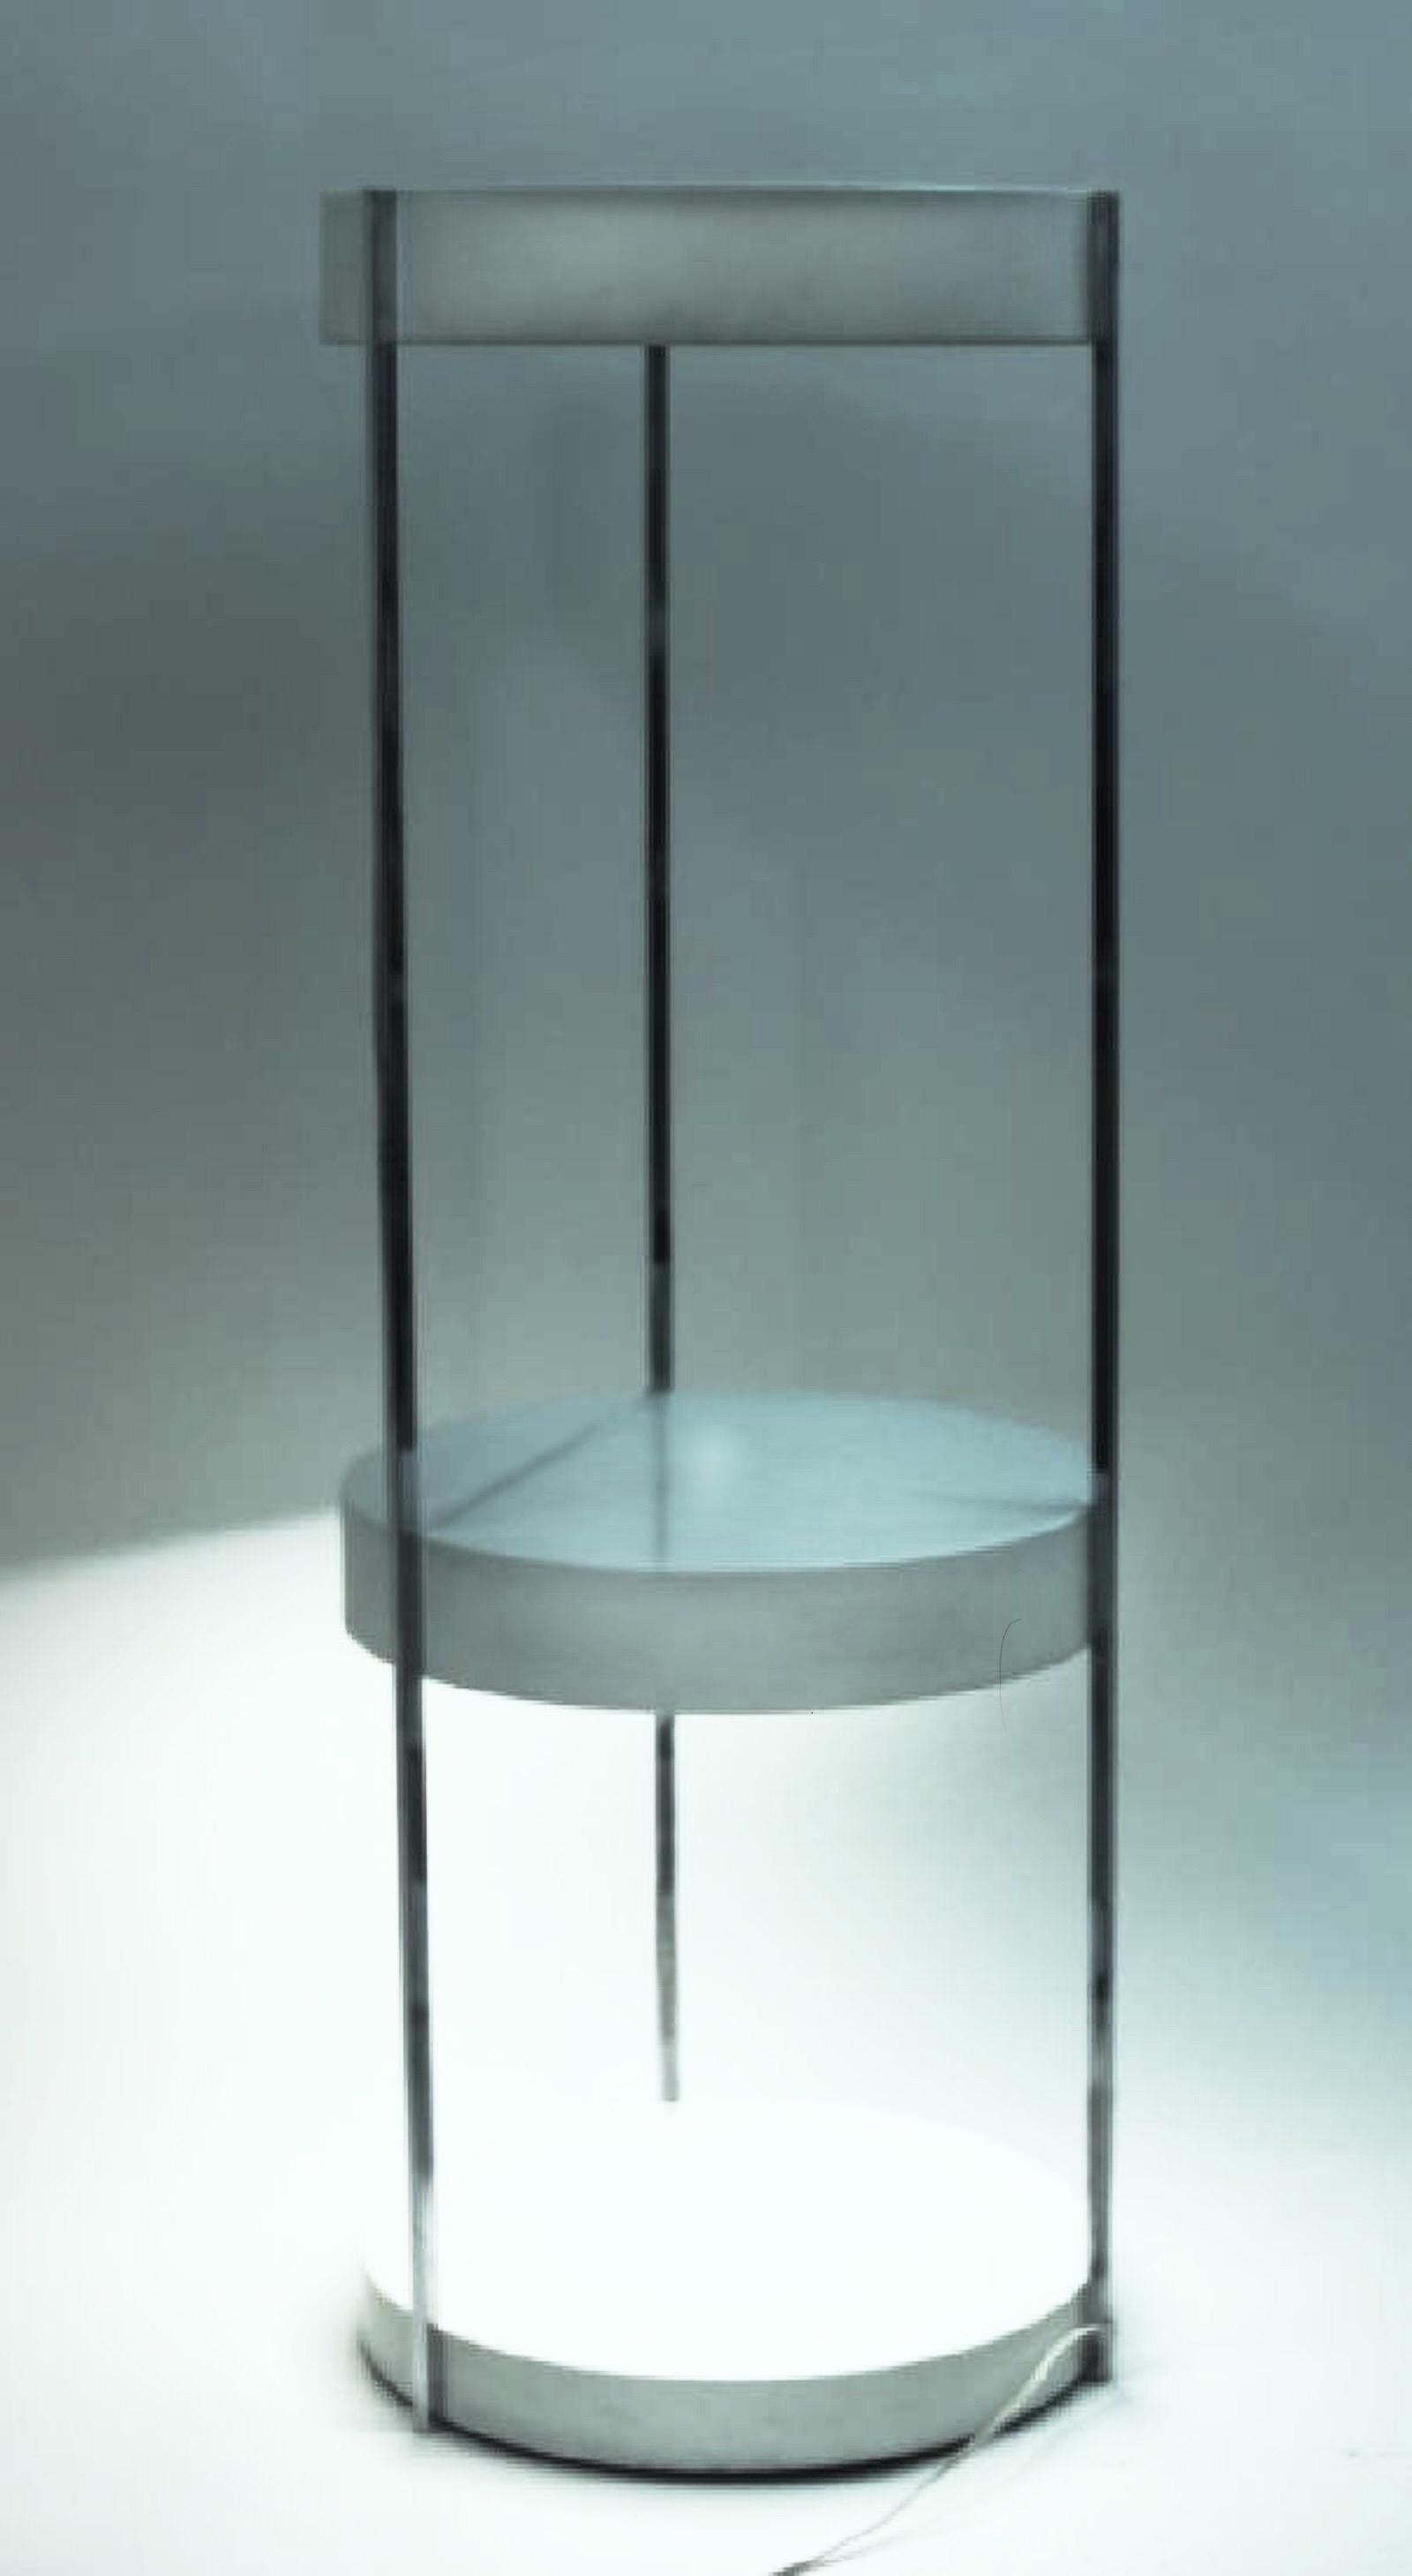 Kovaks Enameled Steel Floor Lamp Shelving & Display Etagere Mid-Century Minimal For Sale 2